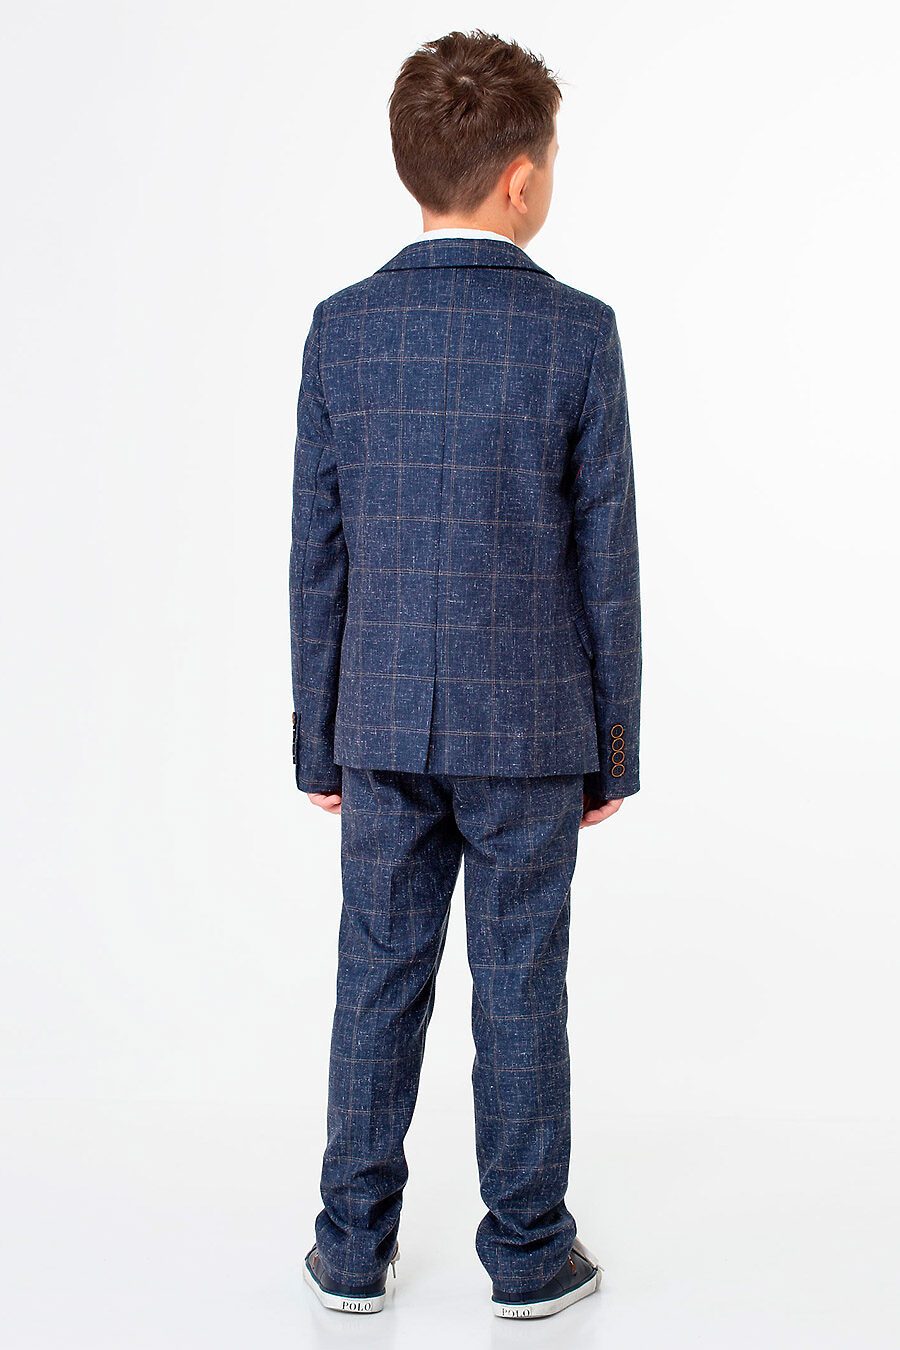 Пиджак для мальчиков PANDA 741323 купить оптом от производителя. Совместная покупка детской одежды в OptMoyo